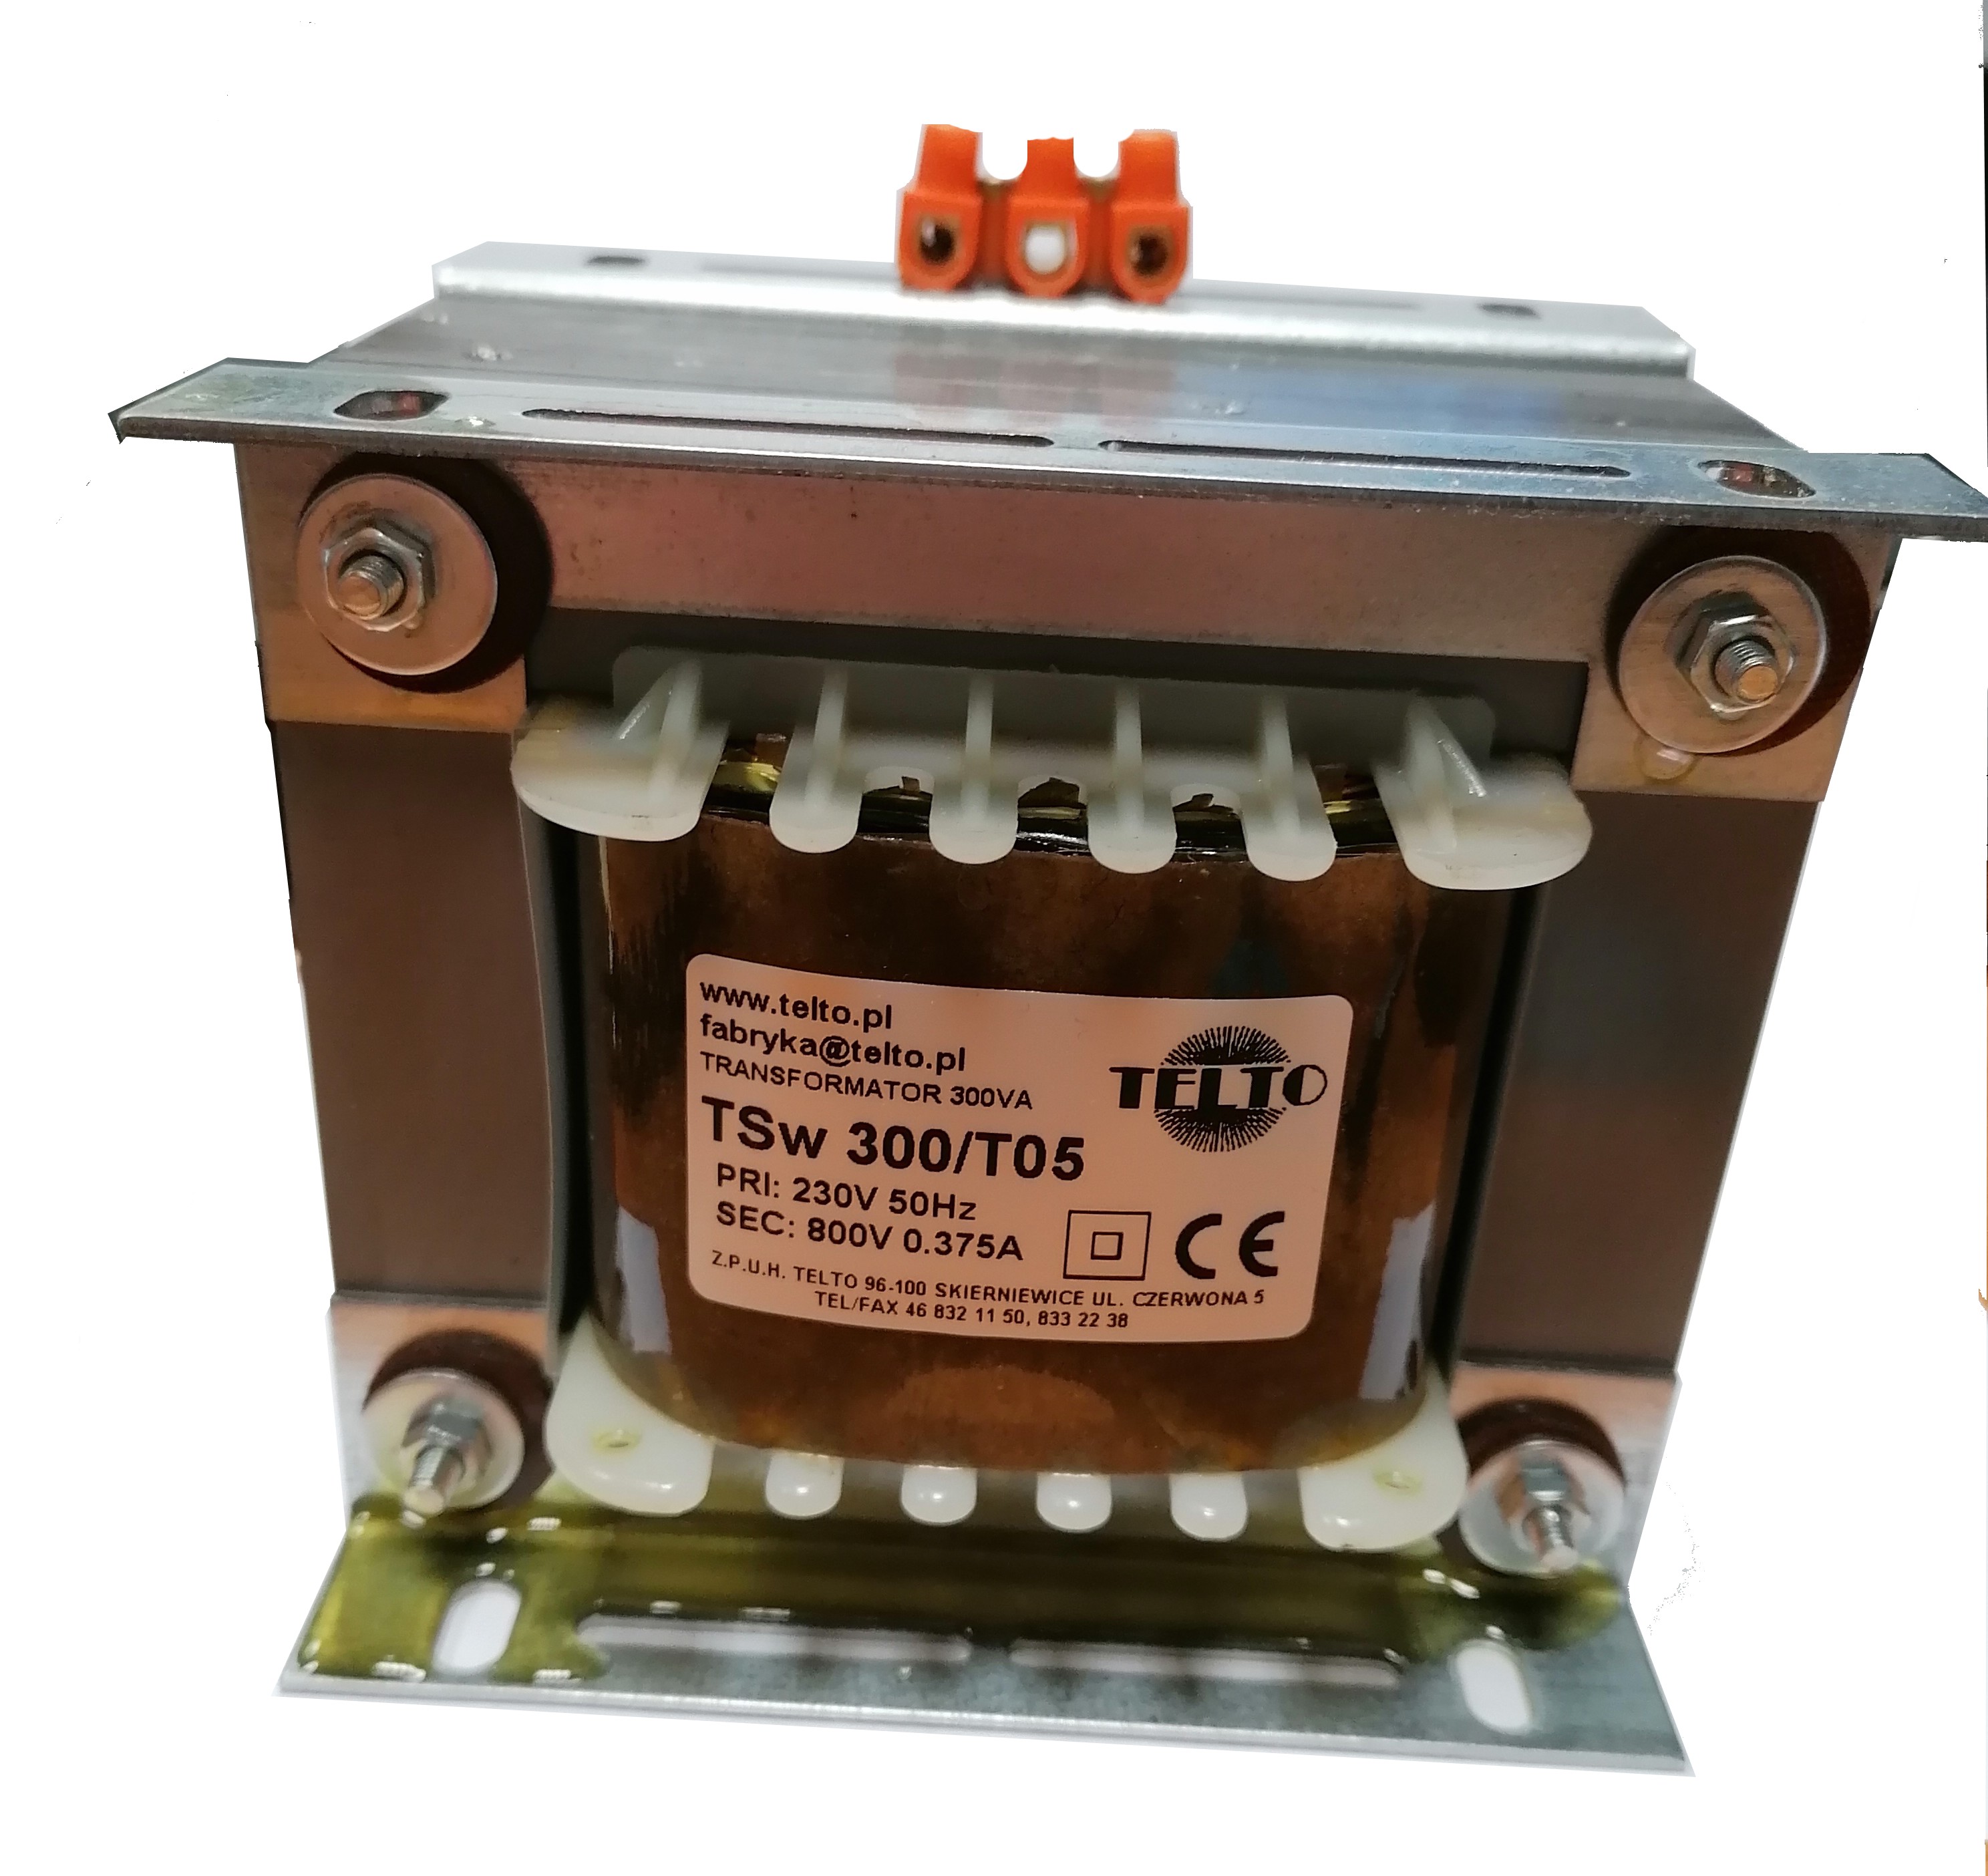 Transformator sieciowy wysokonapięciowy TSw 300/T05 230/800V 0.3